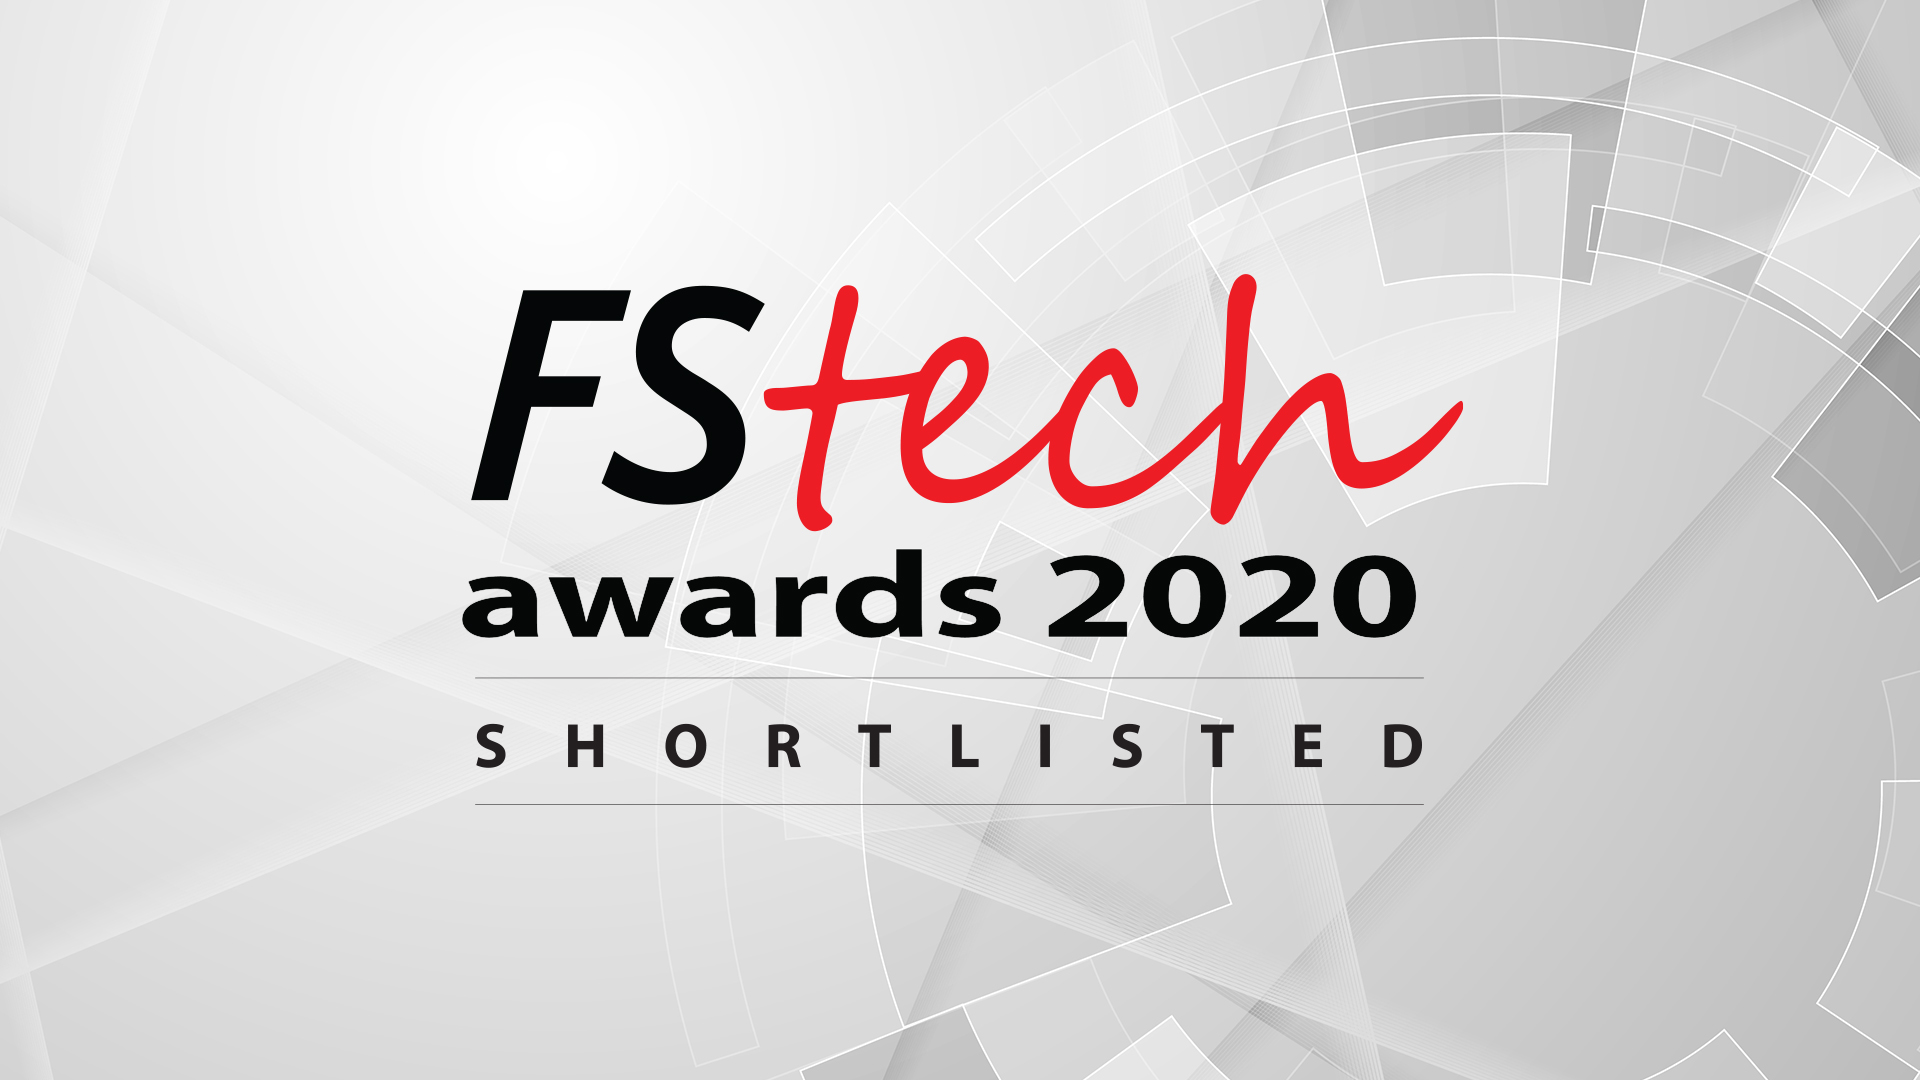 FStech awards 2020